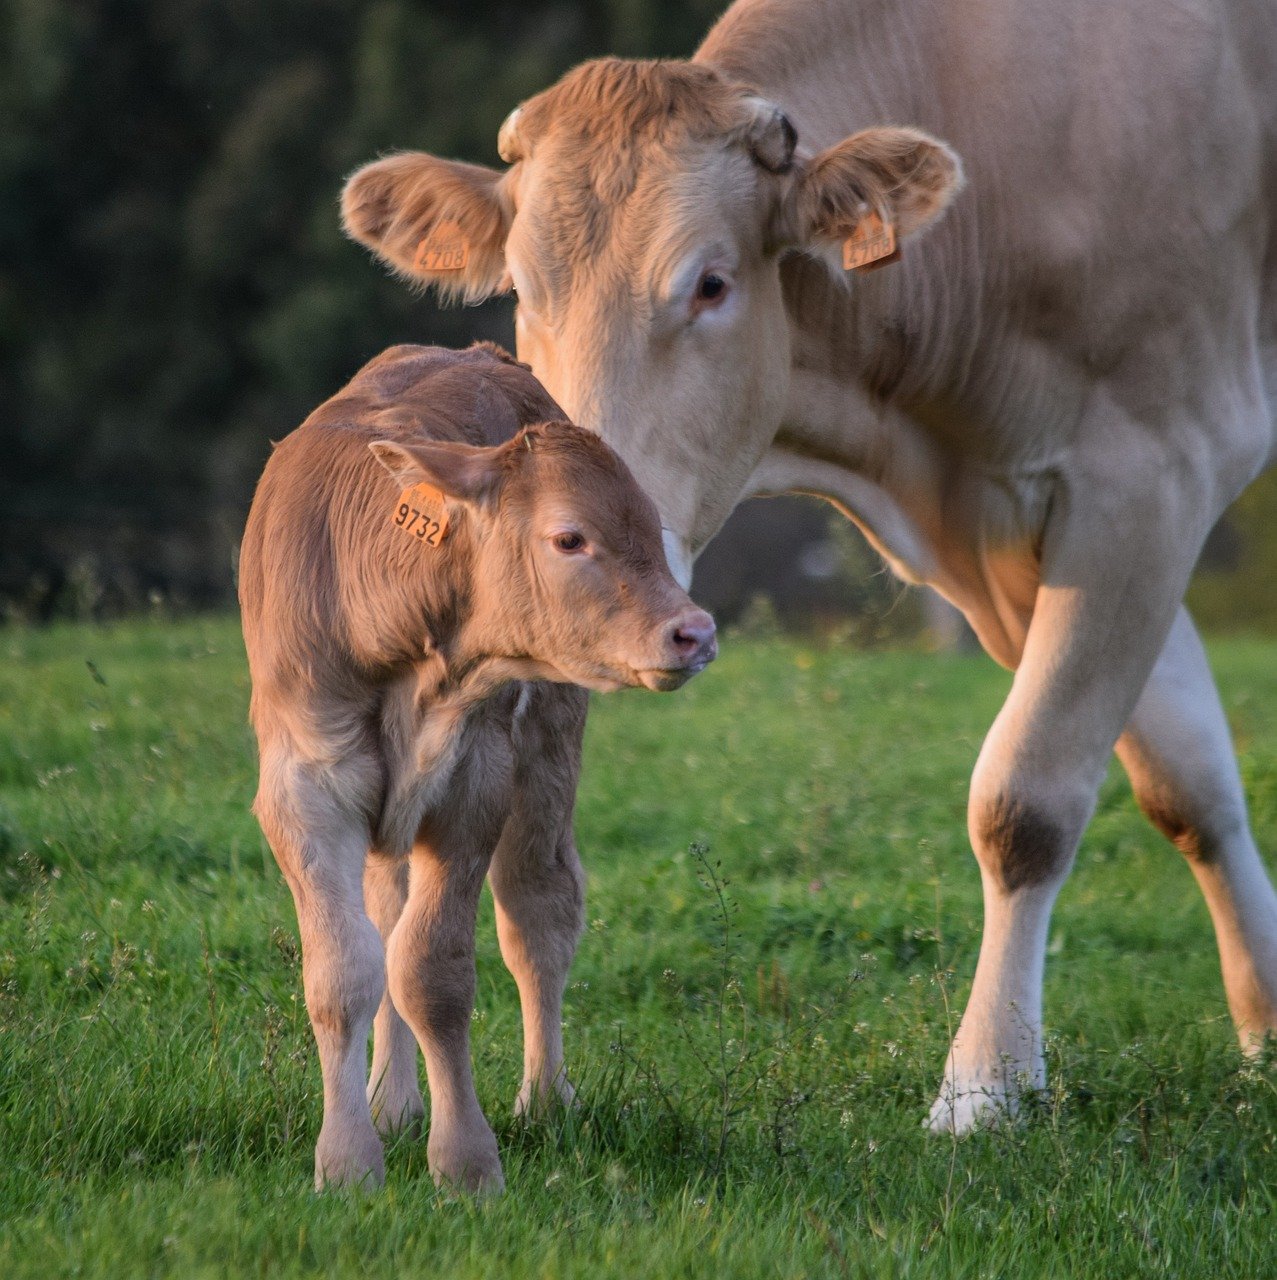 Suszony wywar gorzelniczy – poznaj zalety DDGS w żywieniu krów mlecznych!